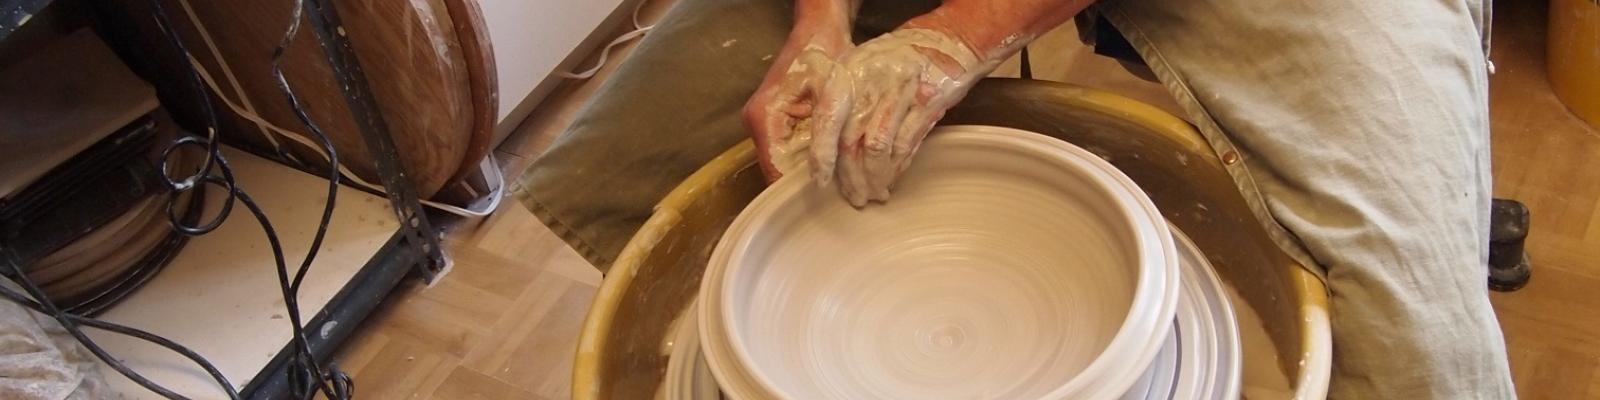 Ceramic artist